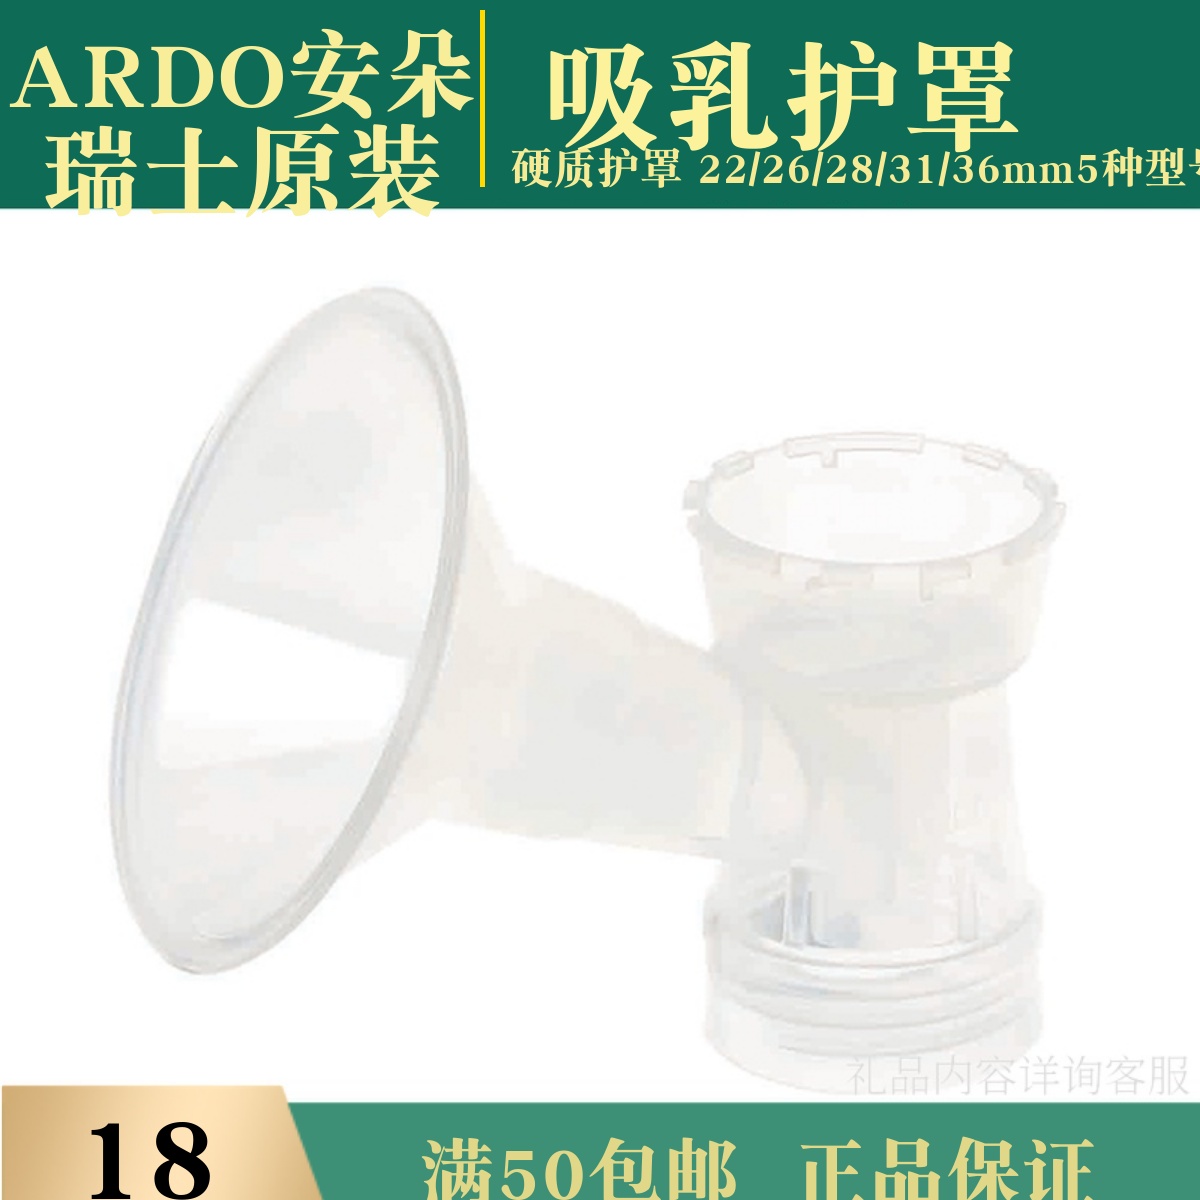 安朵电动手动吸奶器原装配件 吸乳罩杯 喇叭口 硬护罩26 31 36mm